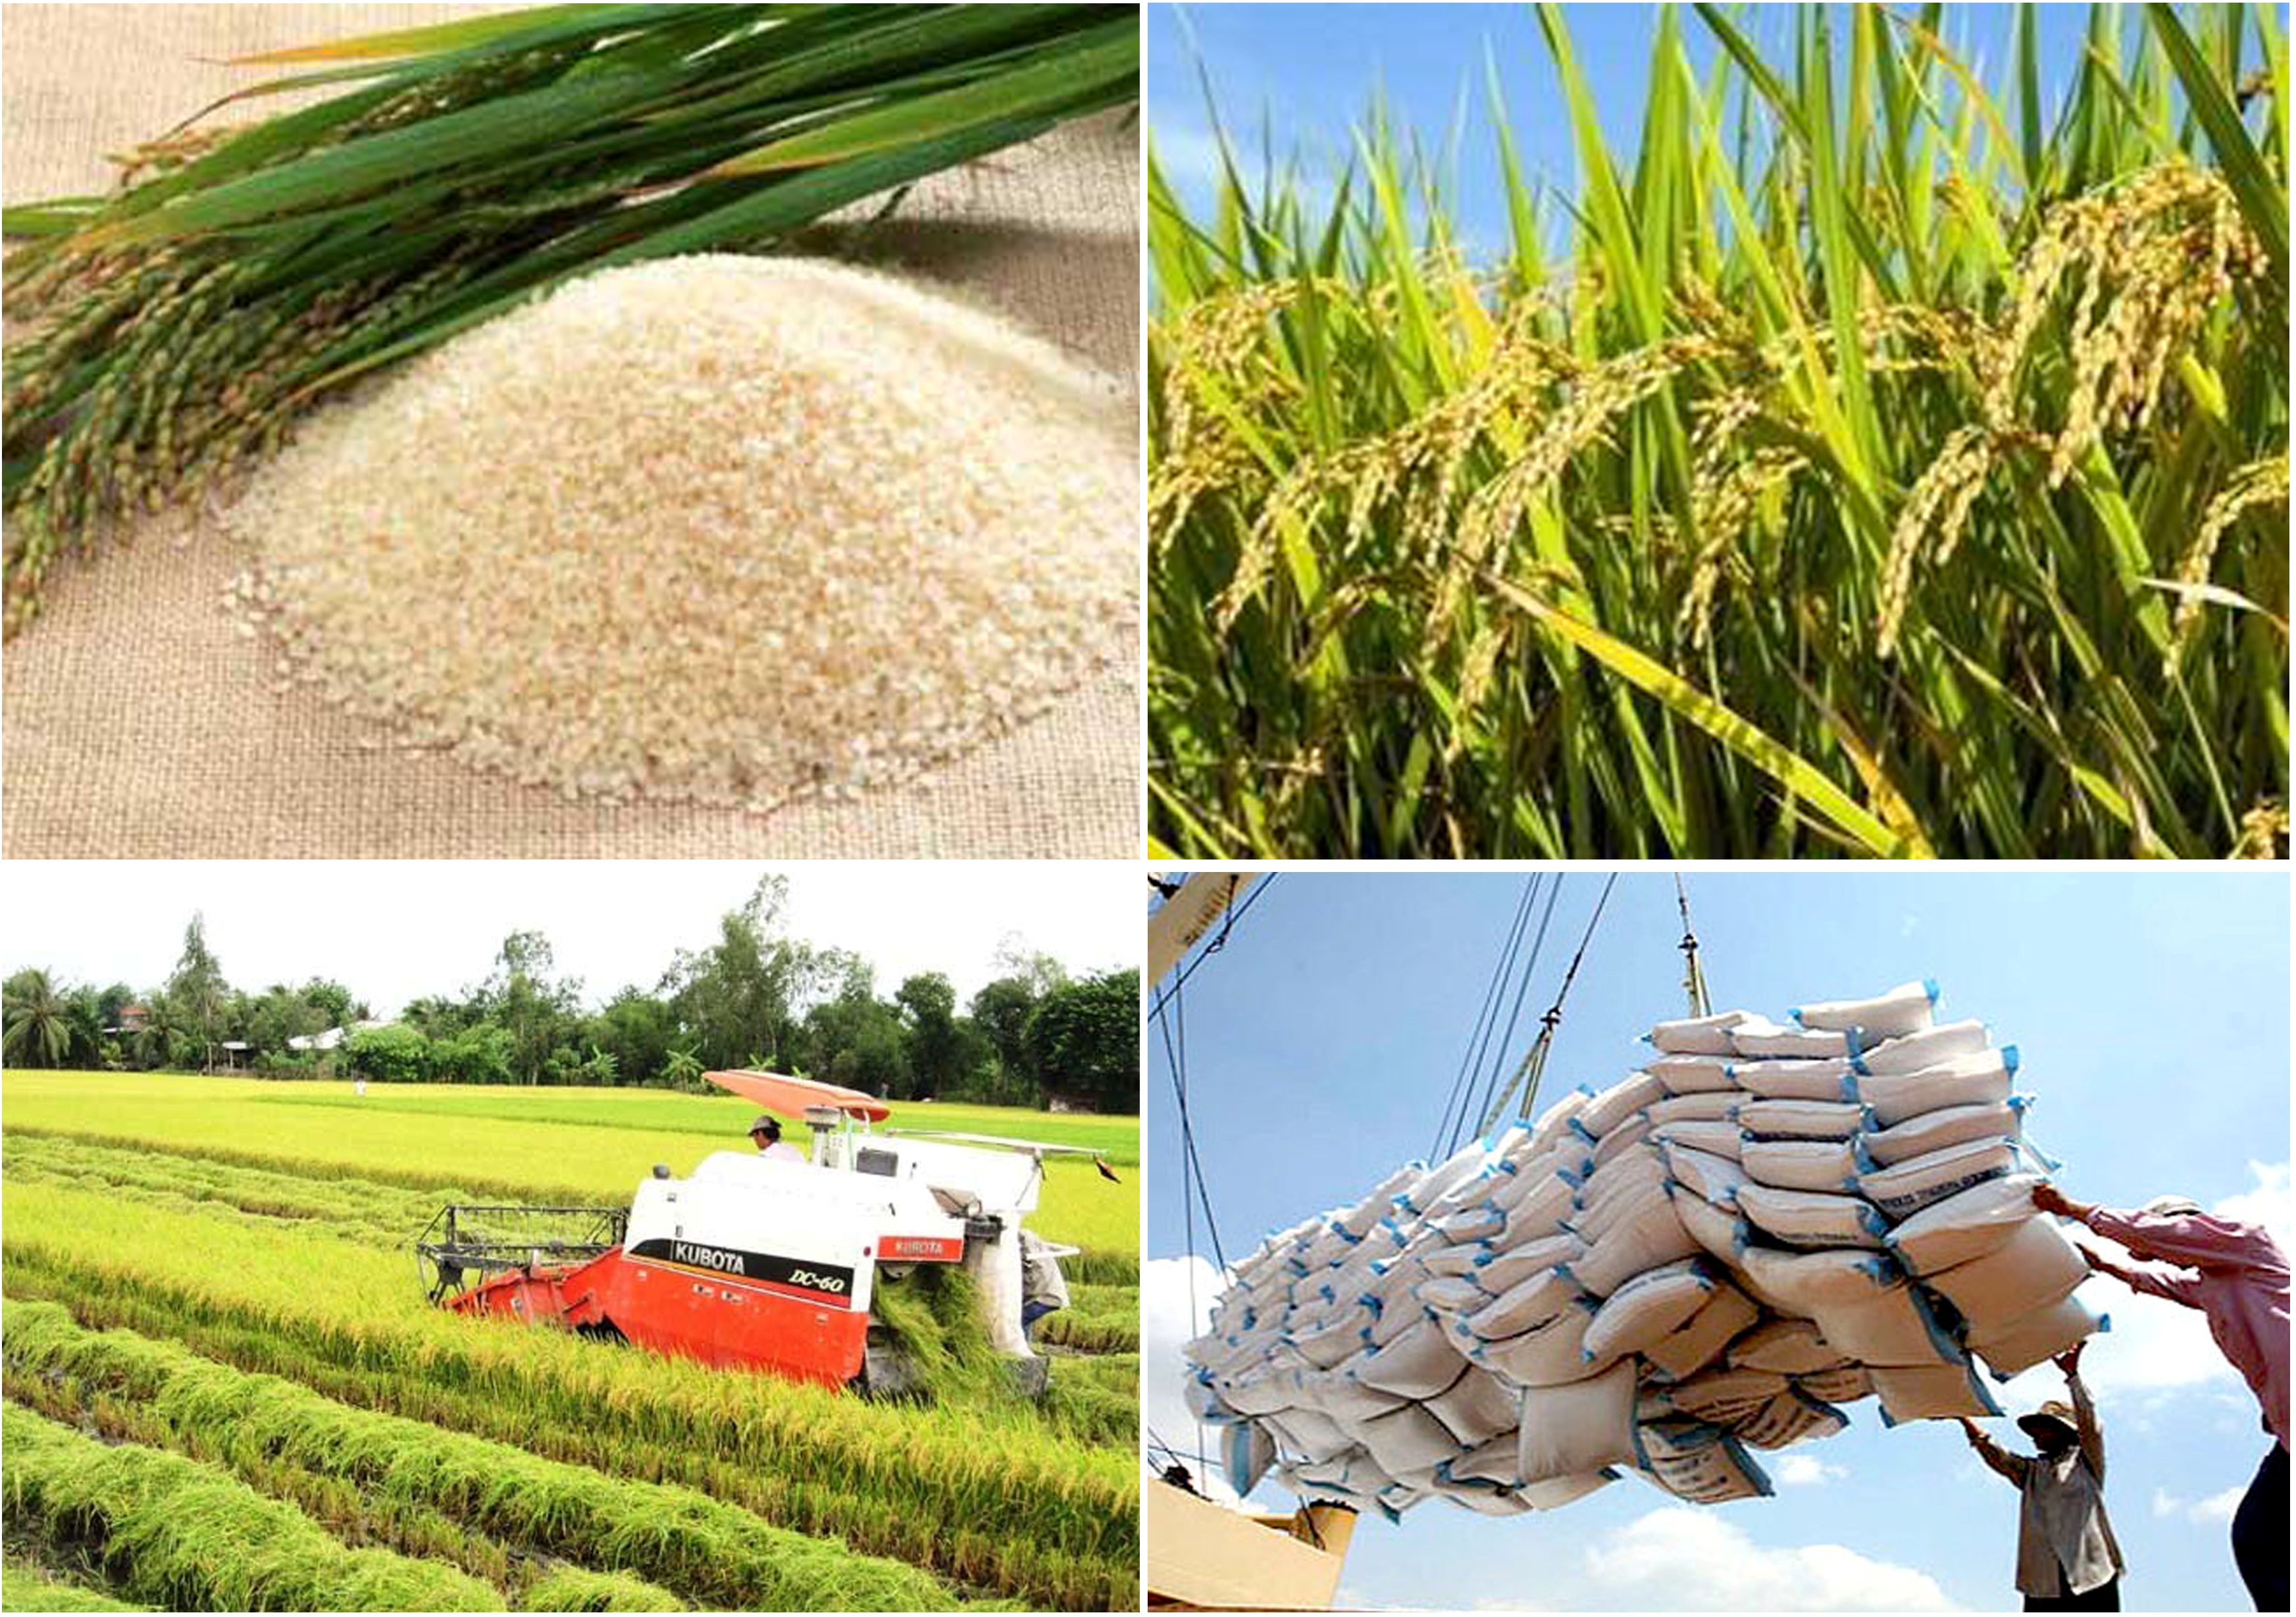 Xuất khẩu gạo là một ngành kinh doanh quan trọng của Việt Nam. Nếu bạn muốn thấy những hình ảnh đặc trưng của ngành này, hãy xem ảnh trong bộ sưu tập của chúng tôi.